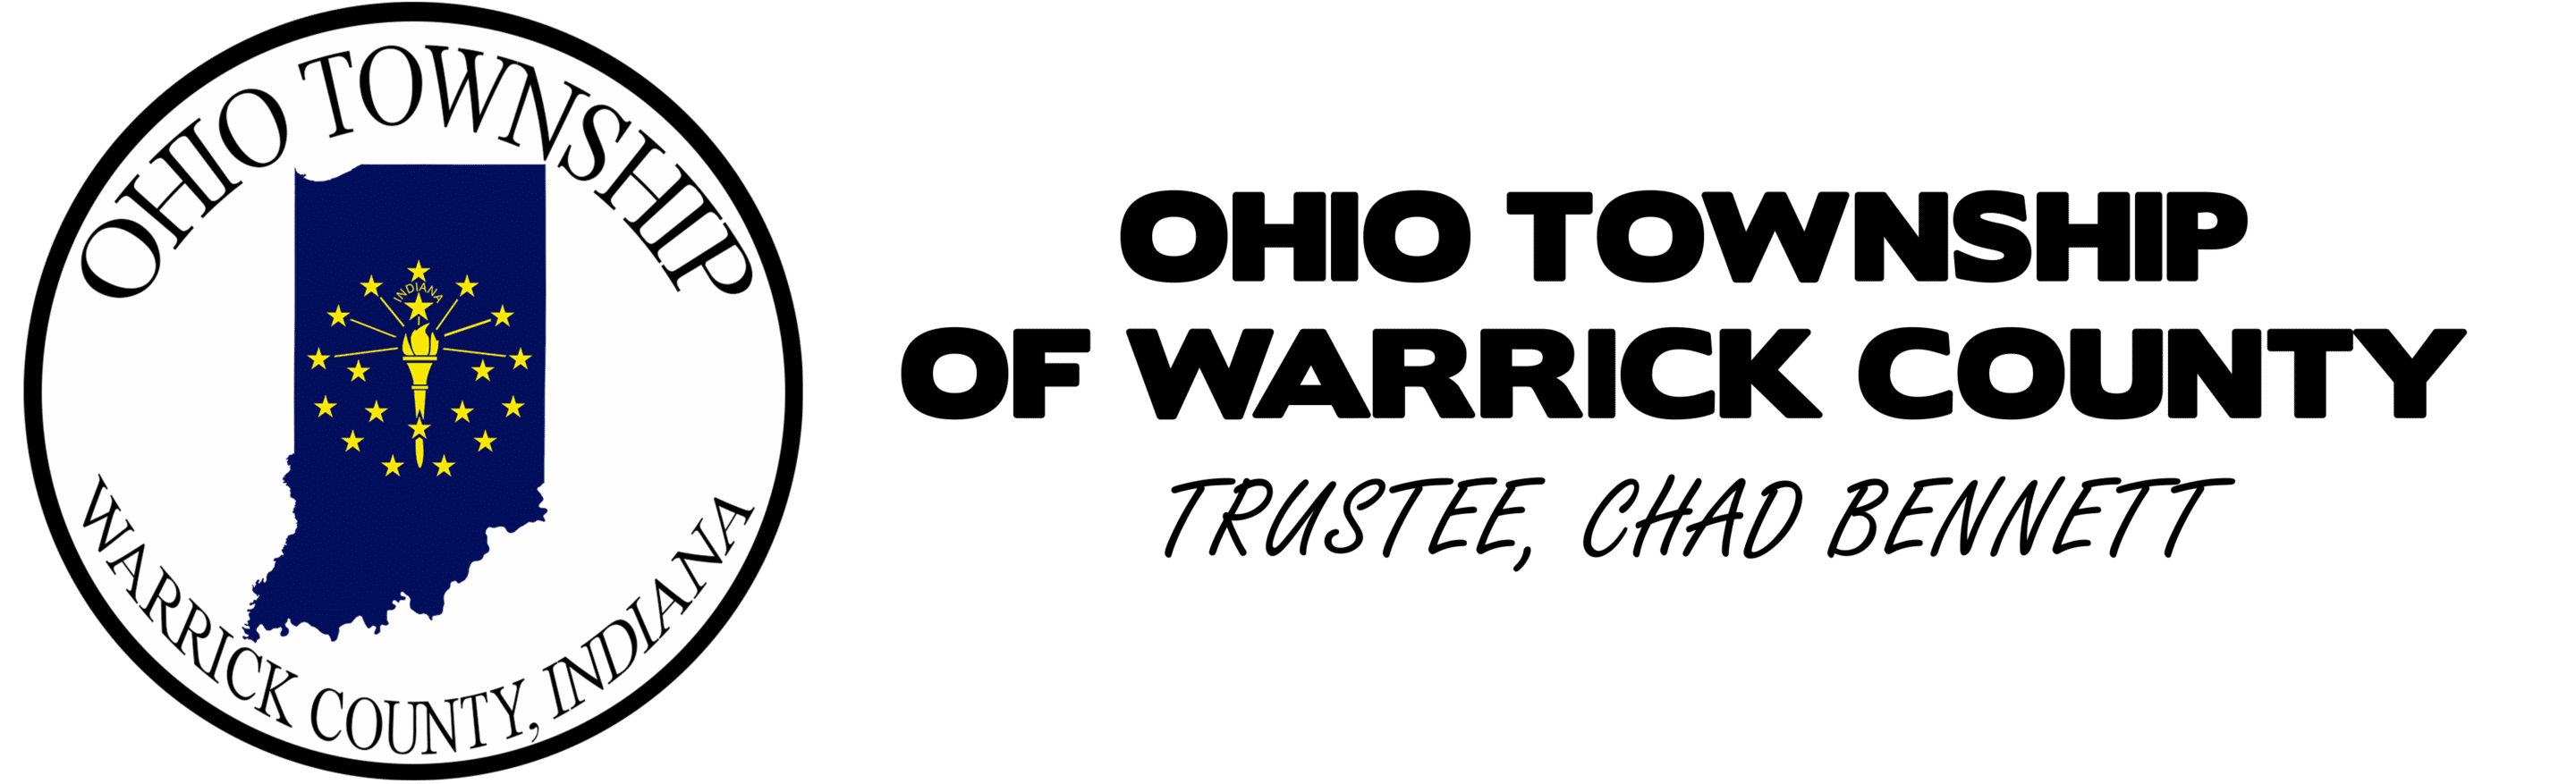 Ohio Township